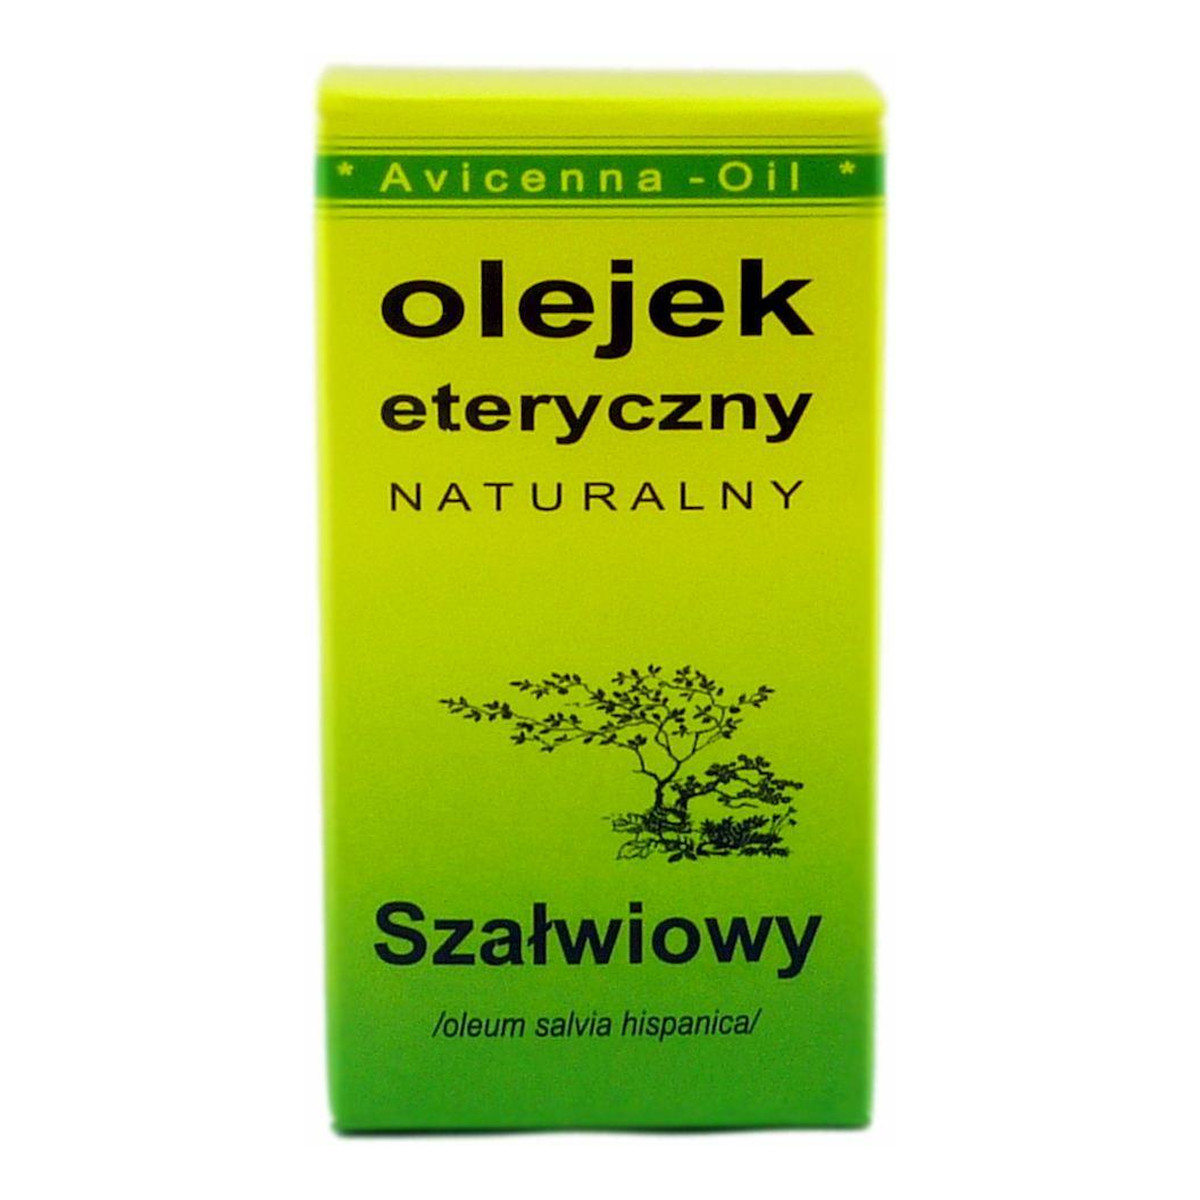 Avicenna-Oil Naturalny Olejek Eteryczny Szałwiowy 7ml